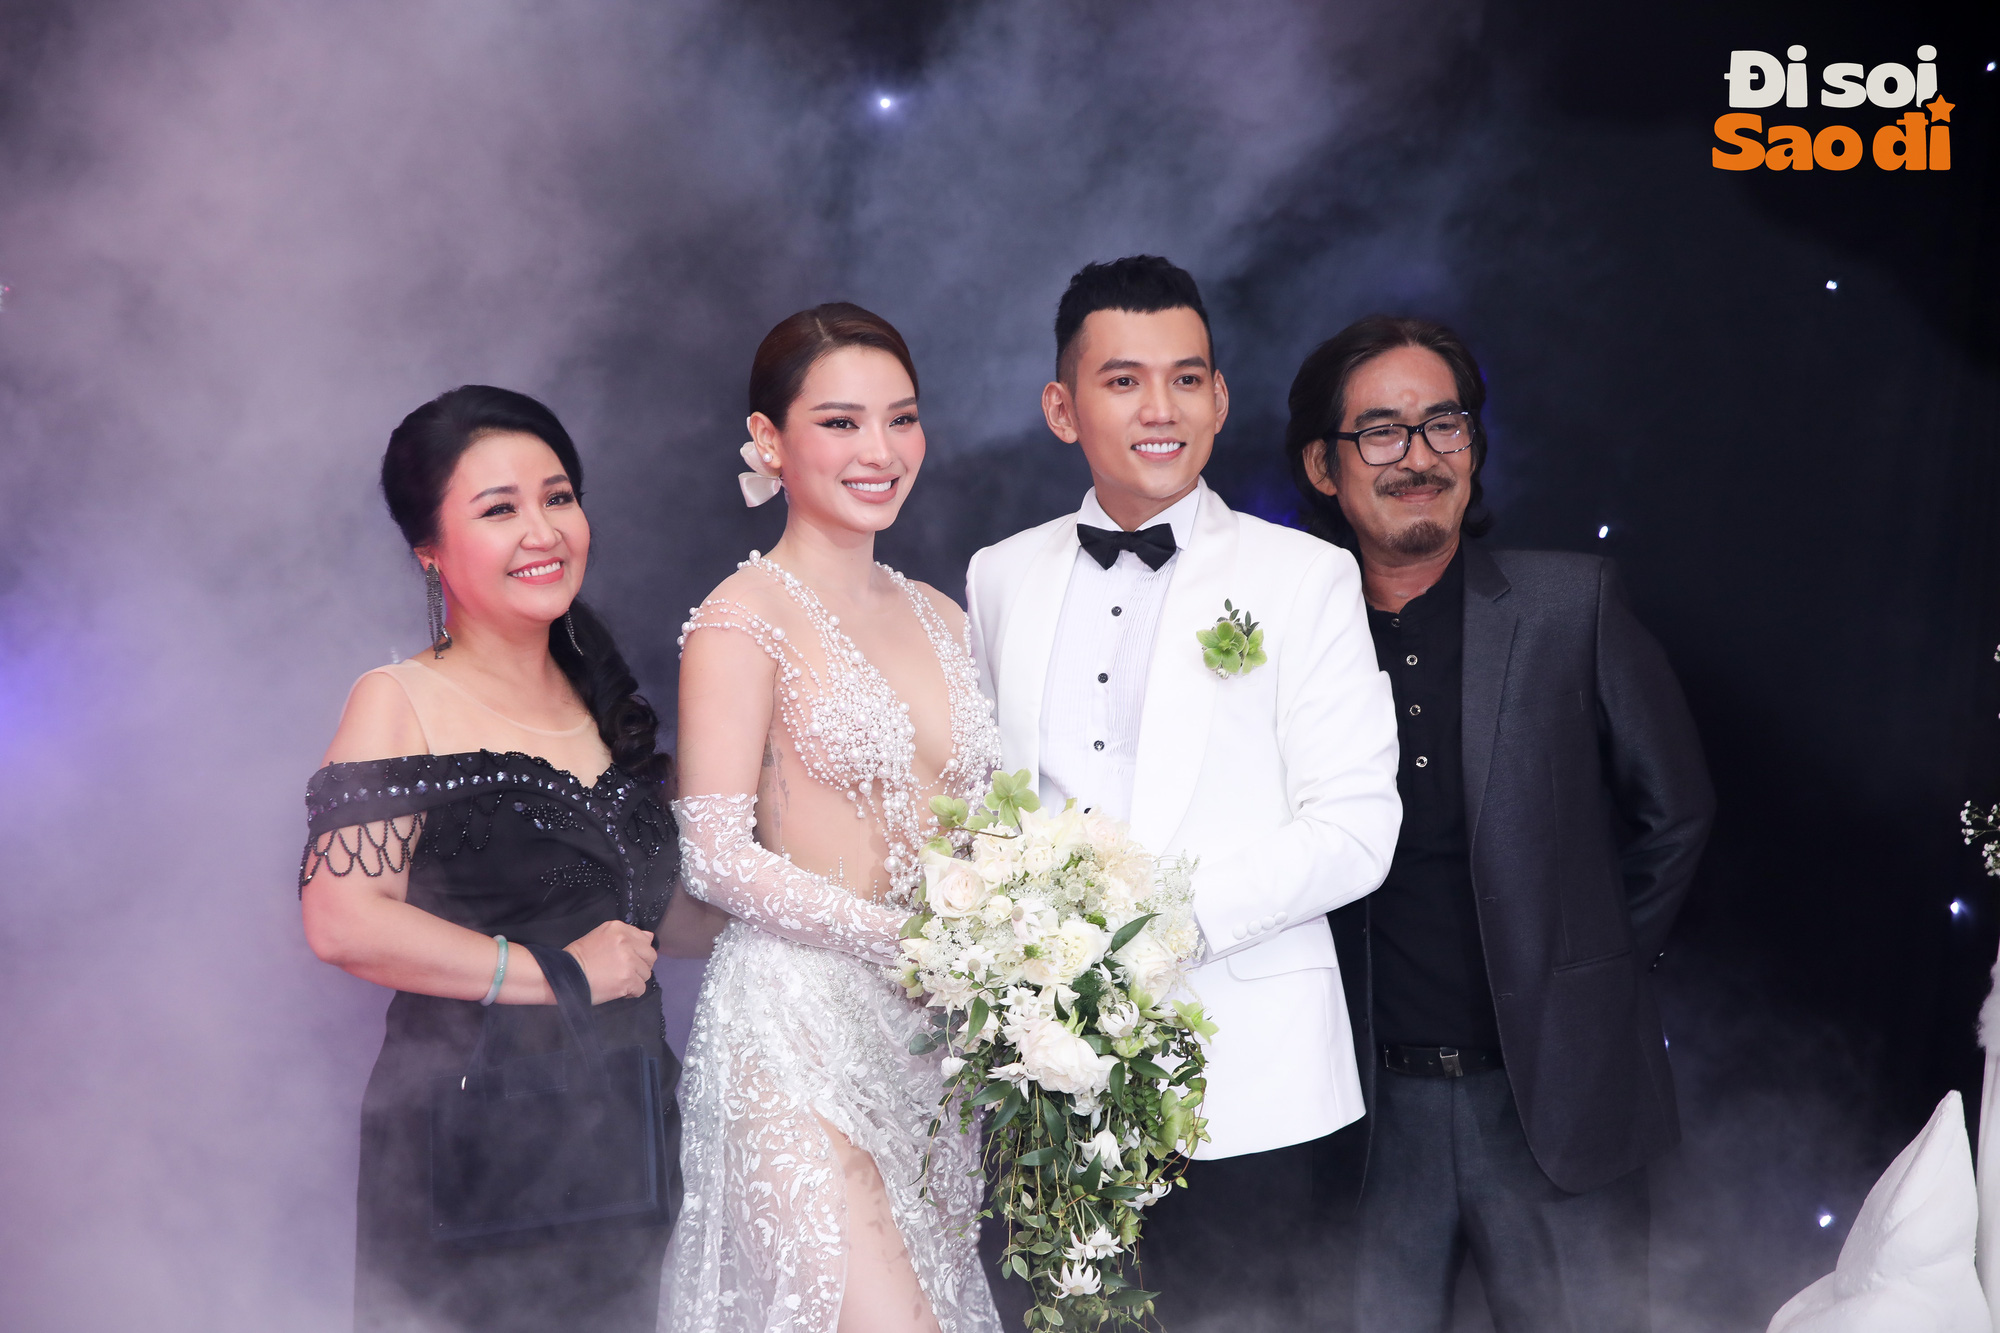 Lâu lắm rồi Vbiz mới rộn ràng đi ăn cưới: Cao Thái Hà, Hải Băng nền nã, hội mỹ nhân đọ sắc trong hôn lễ Phương Trinh Jolie và Lý Bình - Ảnh 3.